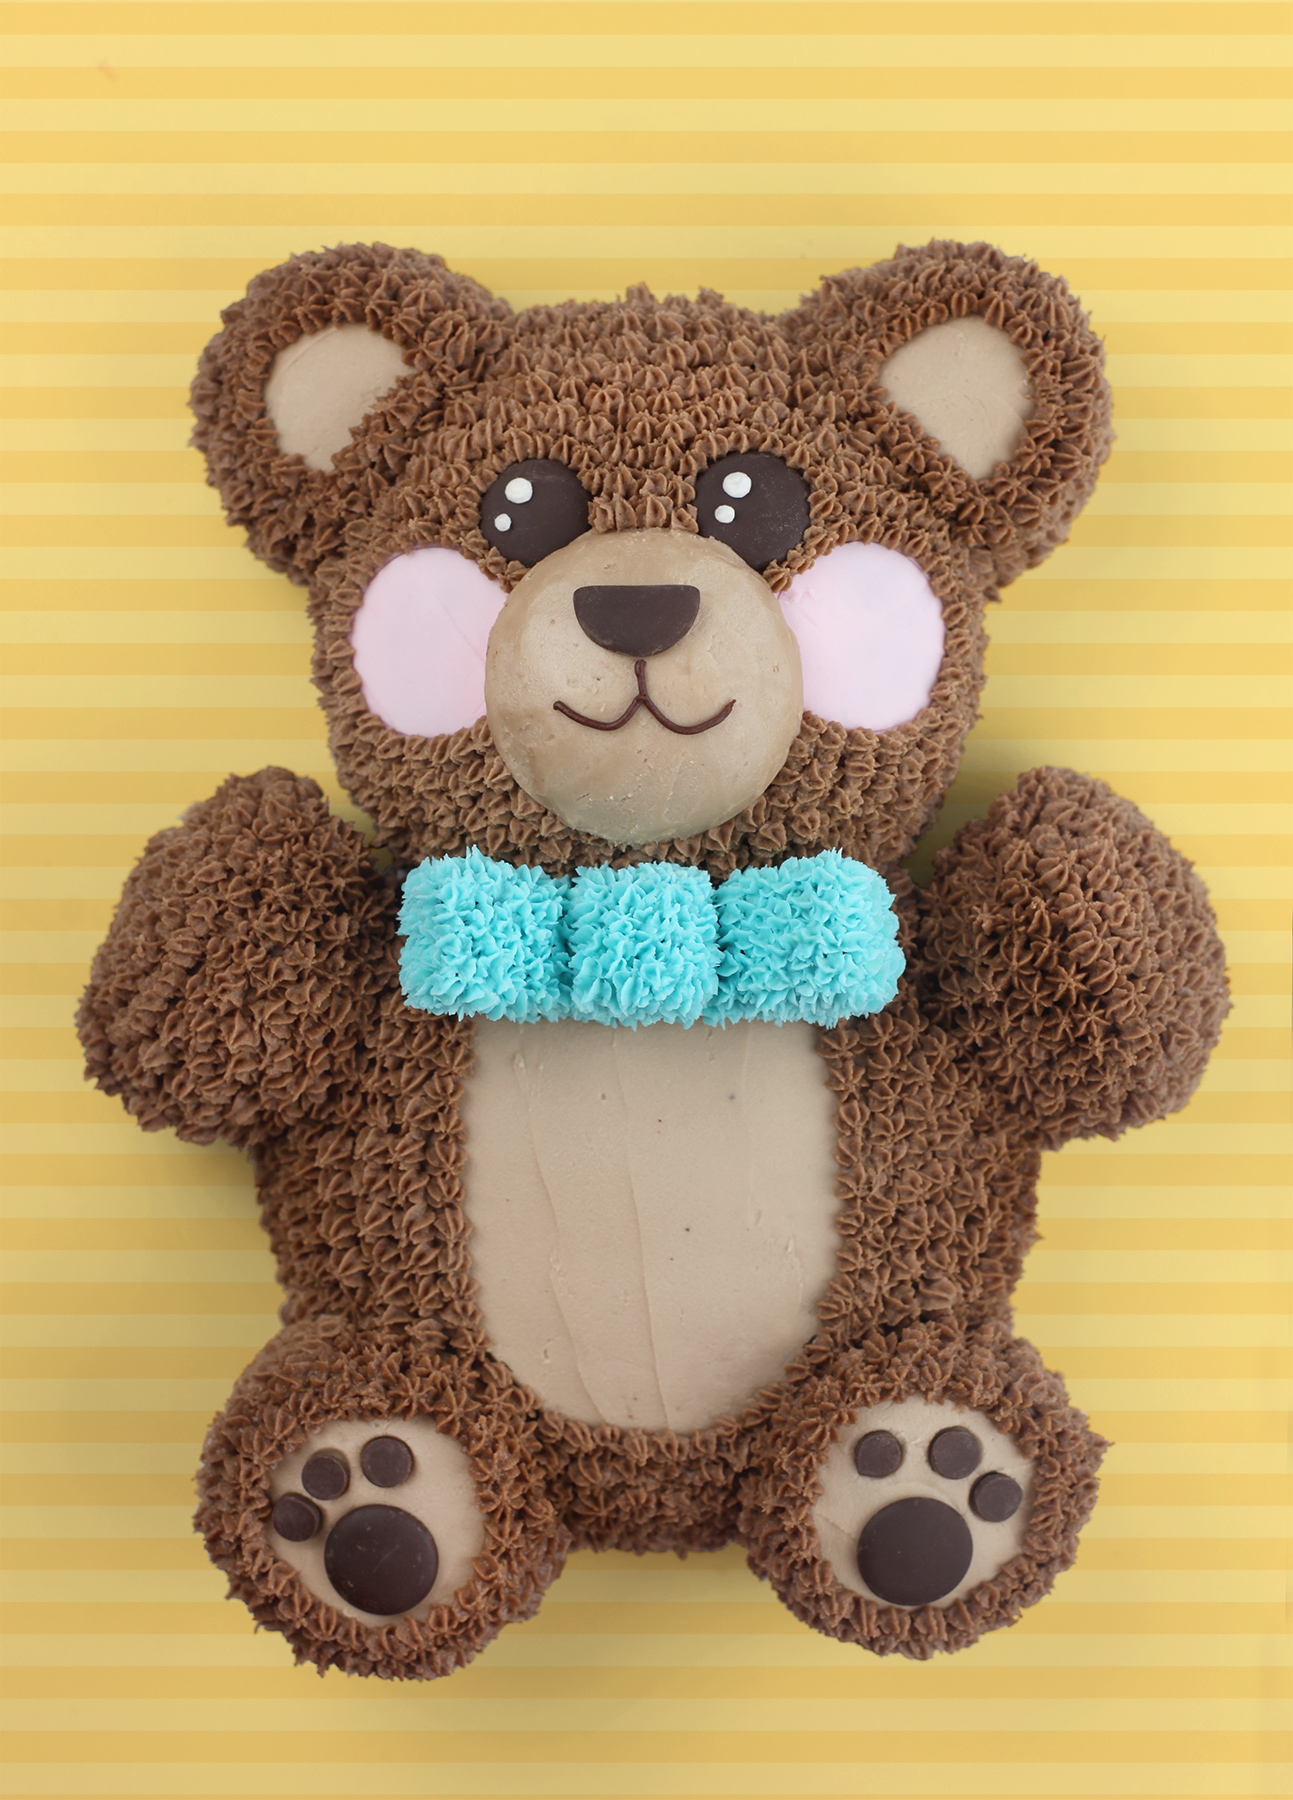 make the teddy bear